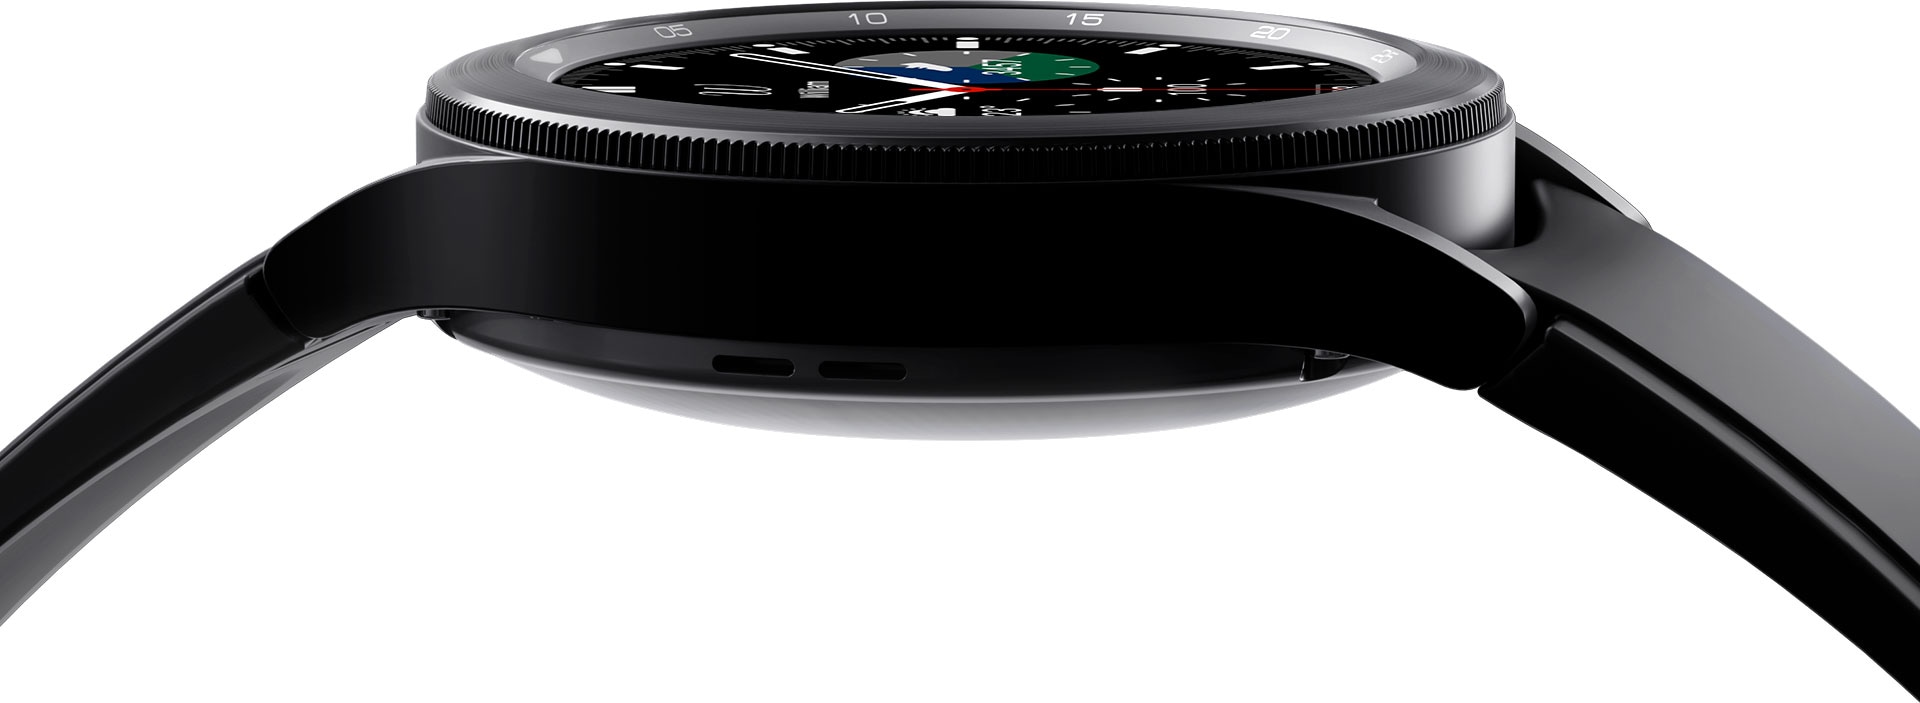 גוף מכשיר ה-Galaxy Watch4 Classic מוצג בתקריב, תוך התמקדות בפרטי המסגרת שלו.